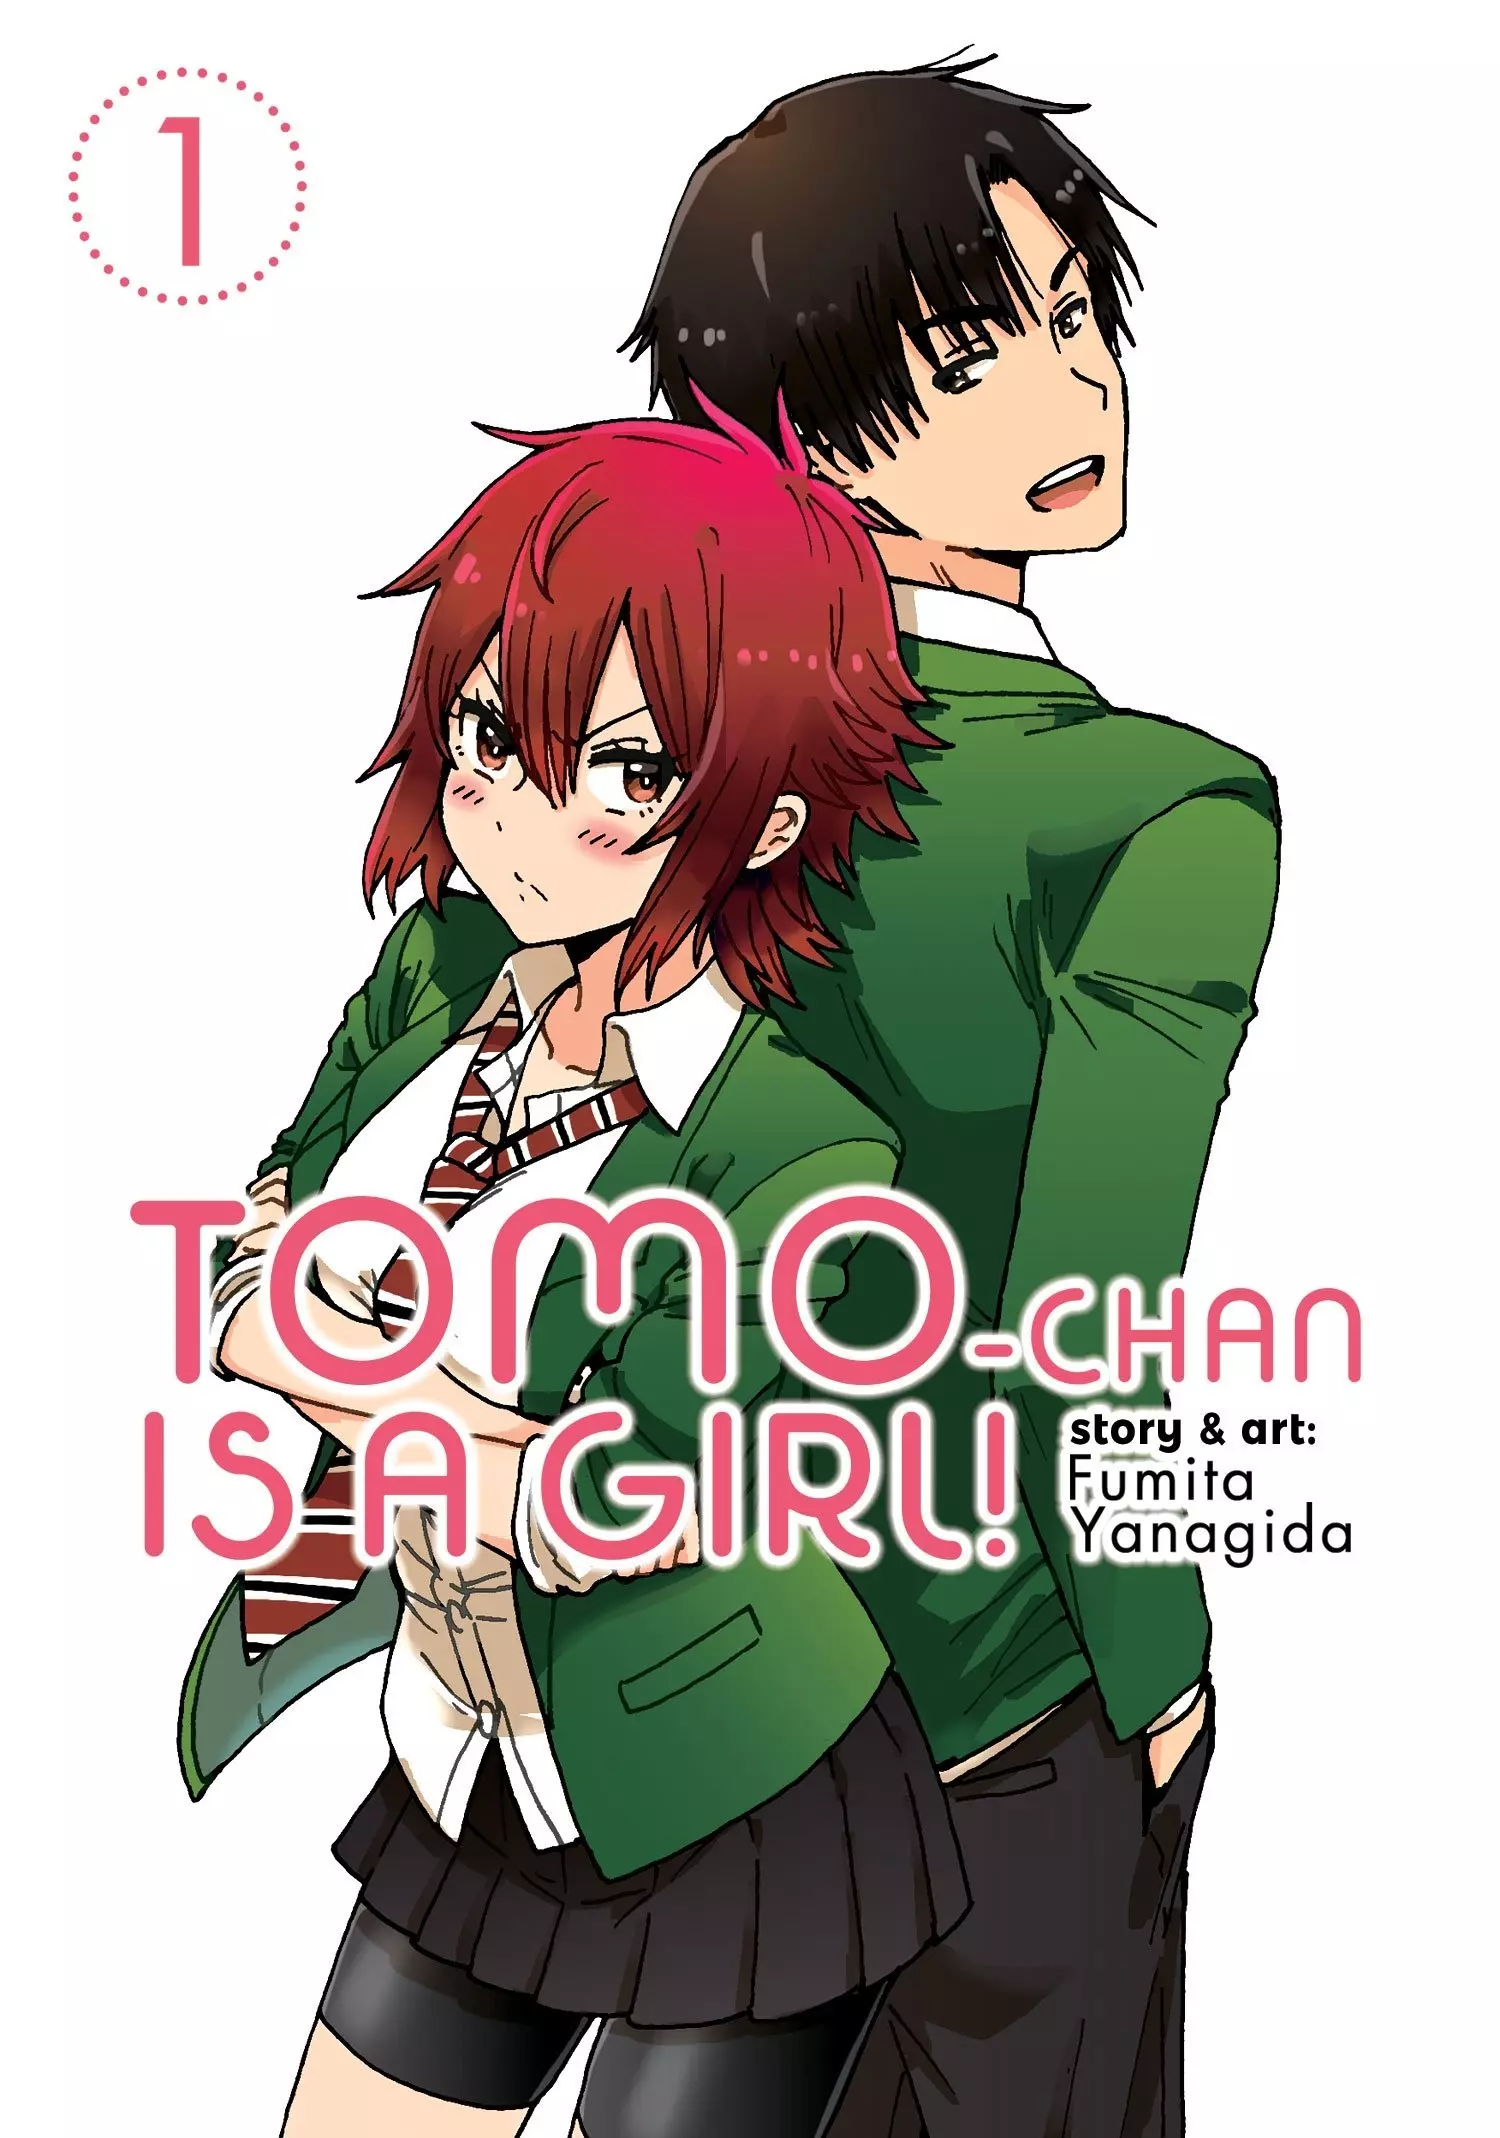 Crunchyroll.pt - Amar é complexo e diverso 💕 (✨ Anime: Tomo-chan Is a  Girl!) #tomochan